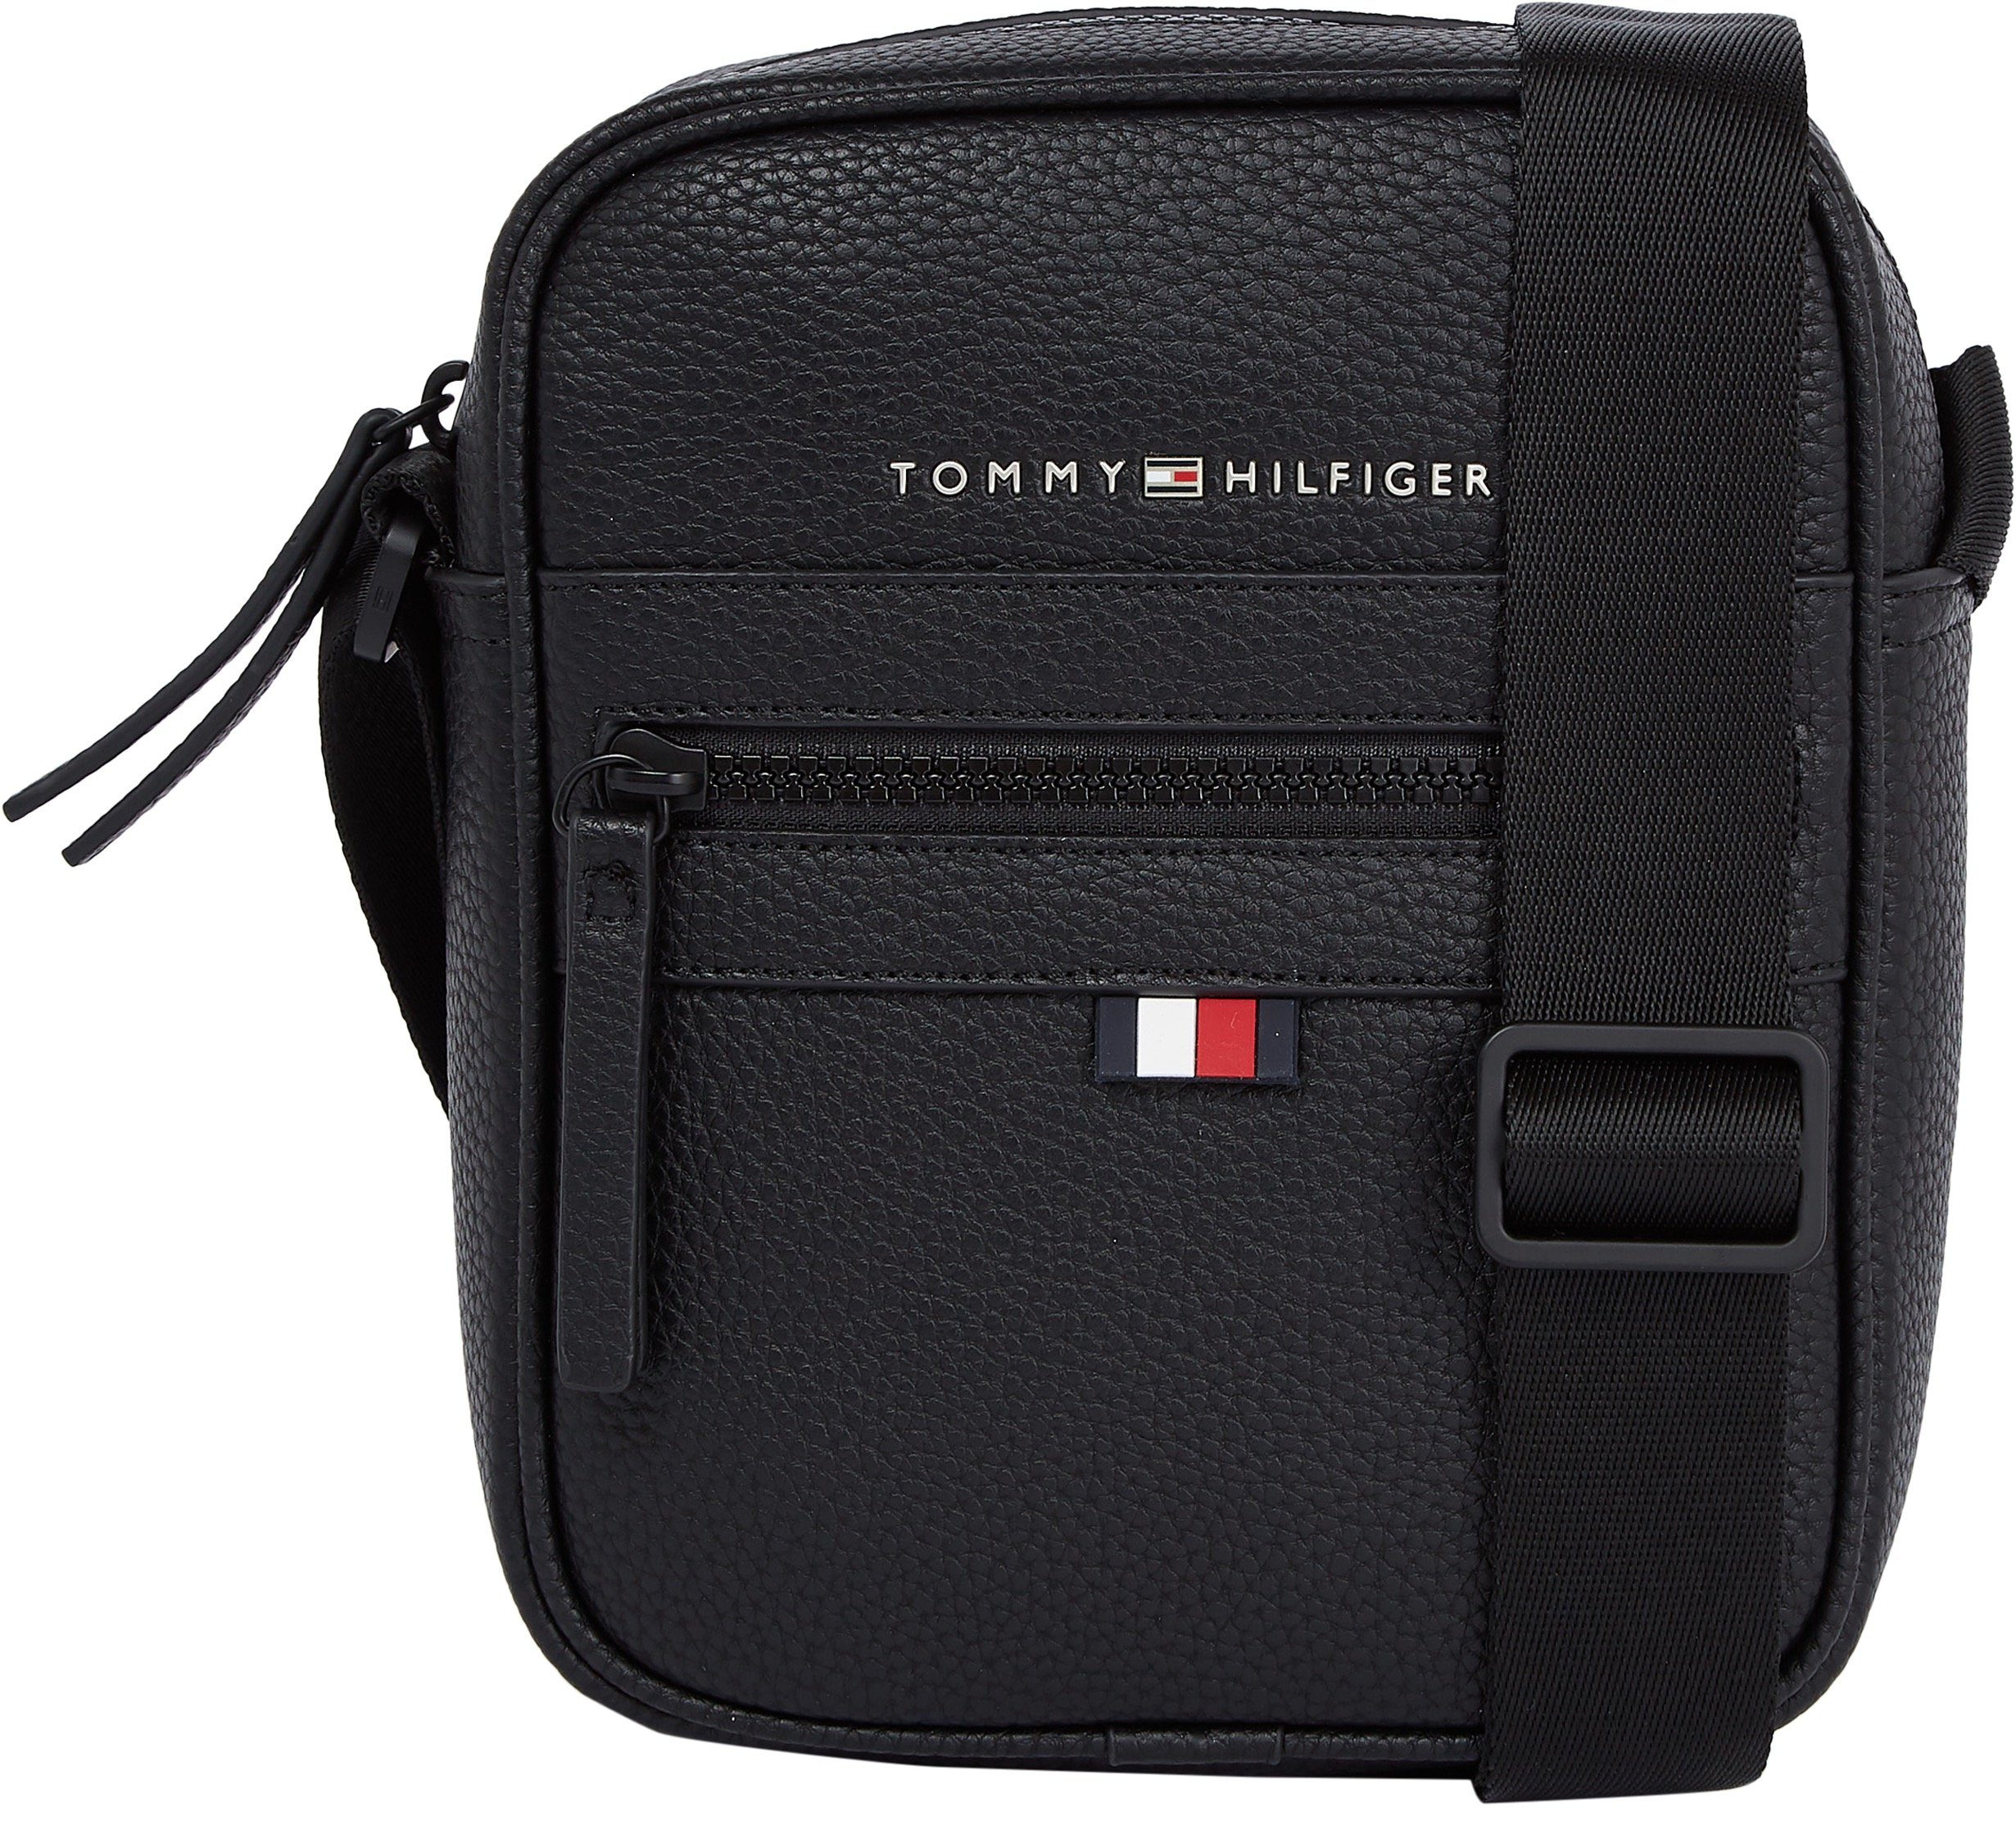 Tommy Hilfiger Herrentaschen online kaufen | OTTO